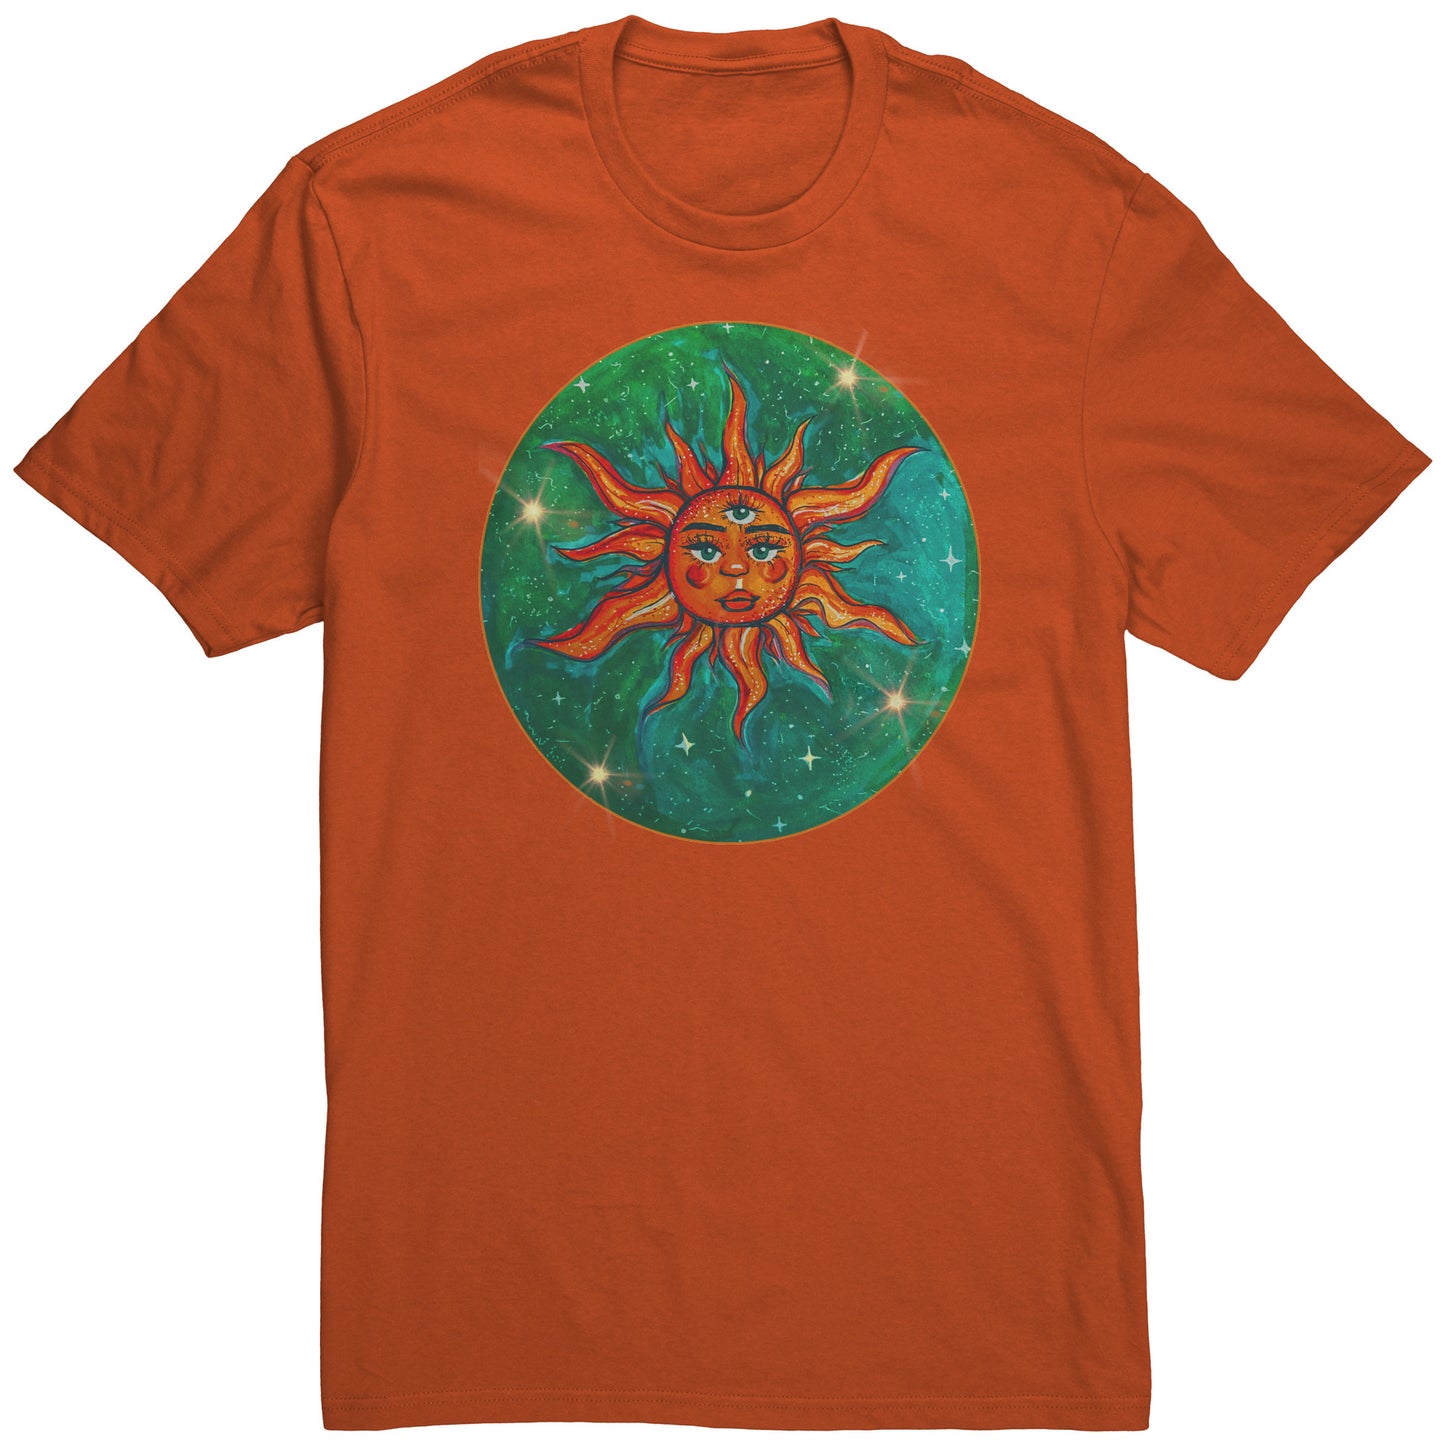 Explore the Universe Celestial Tee: Sun, Earth, Stars T-Shirt